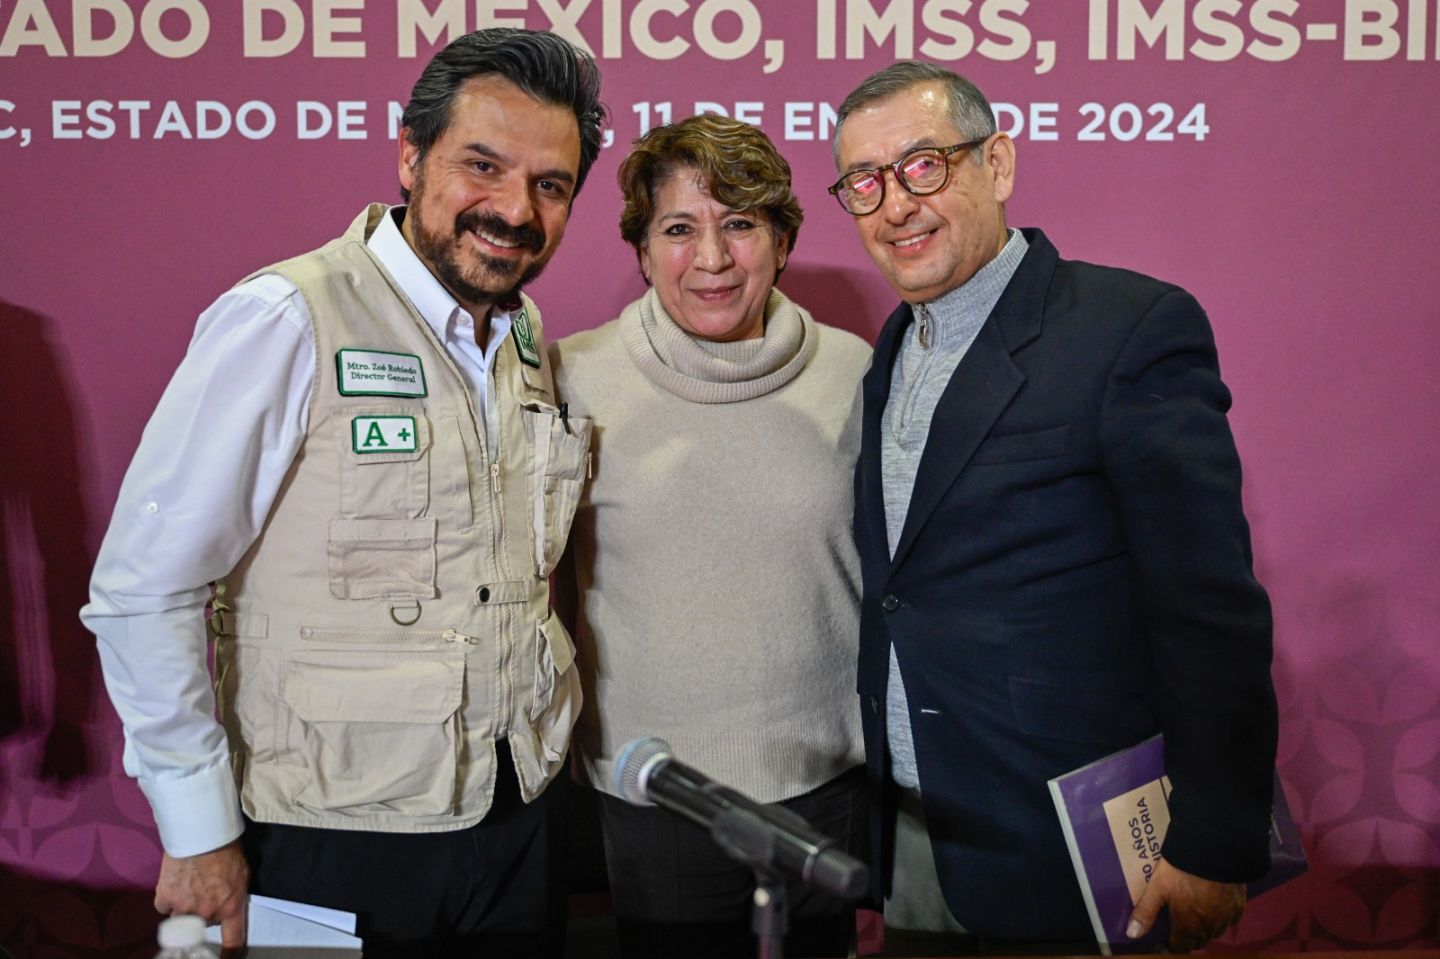 Zoé Robledo y Delfina Gómez Analizan Proyecto de federalización del Estado de México al Modelo IMSS-Bienestar